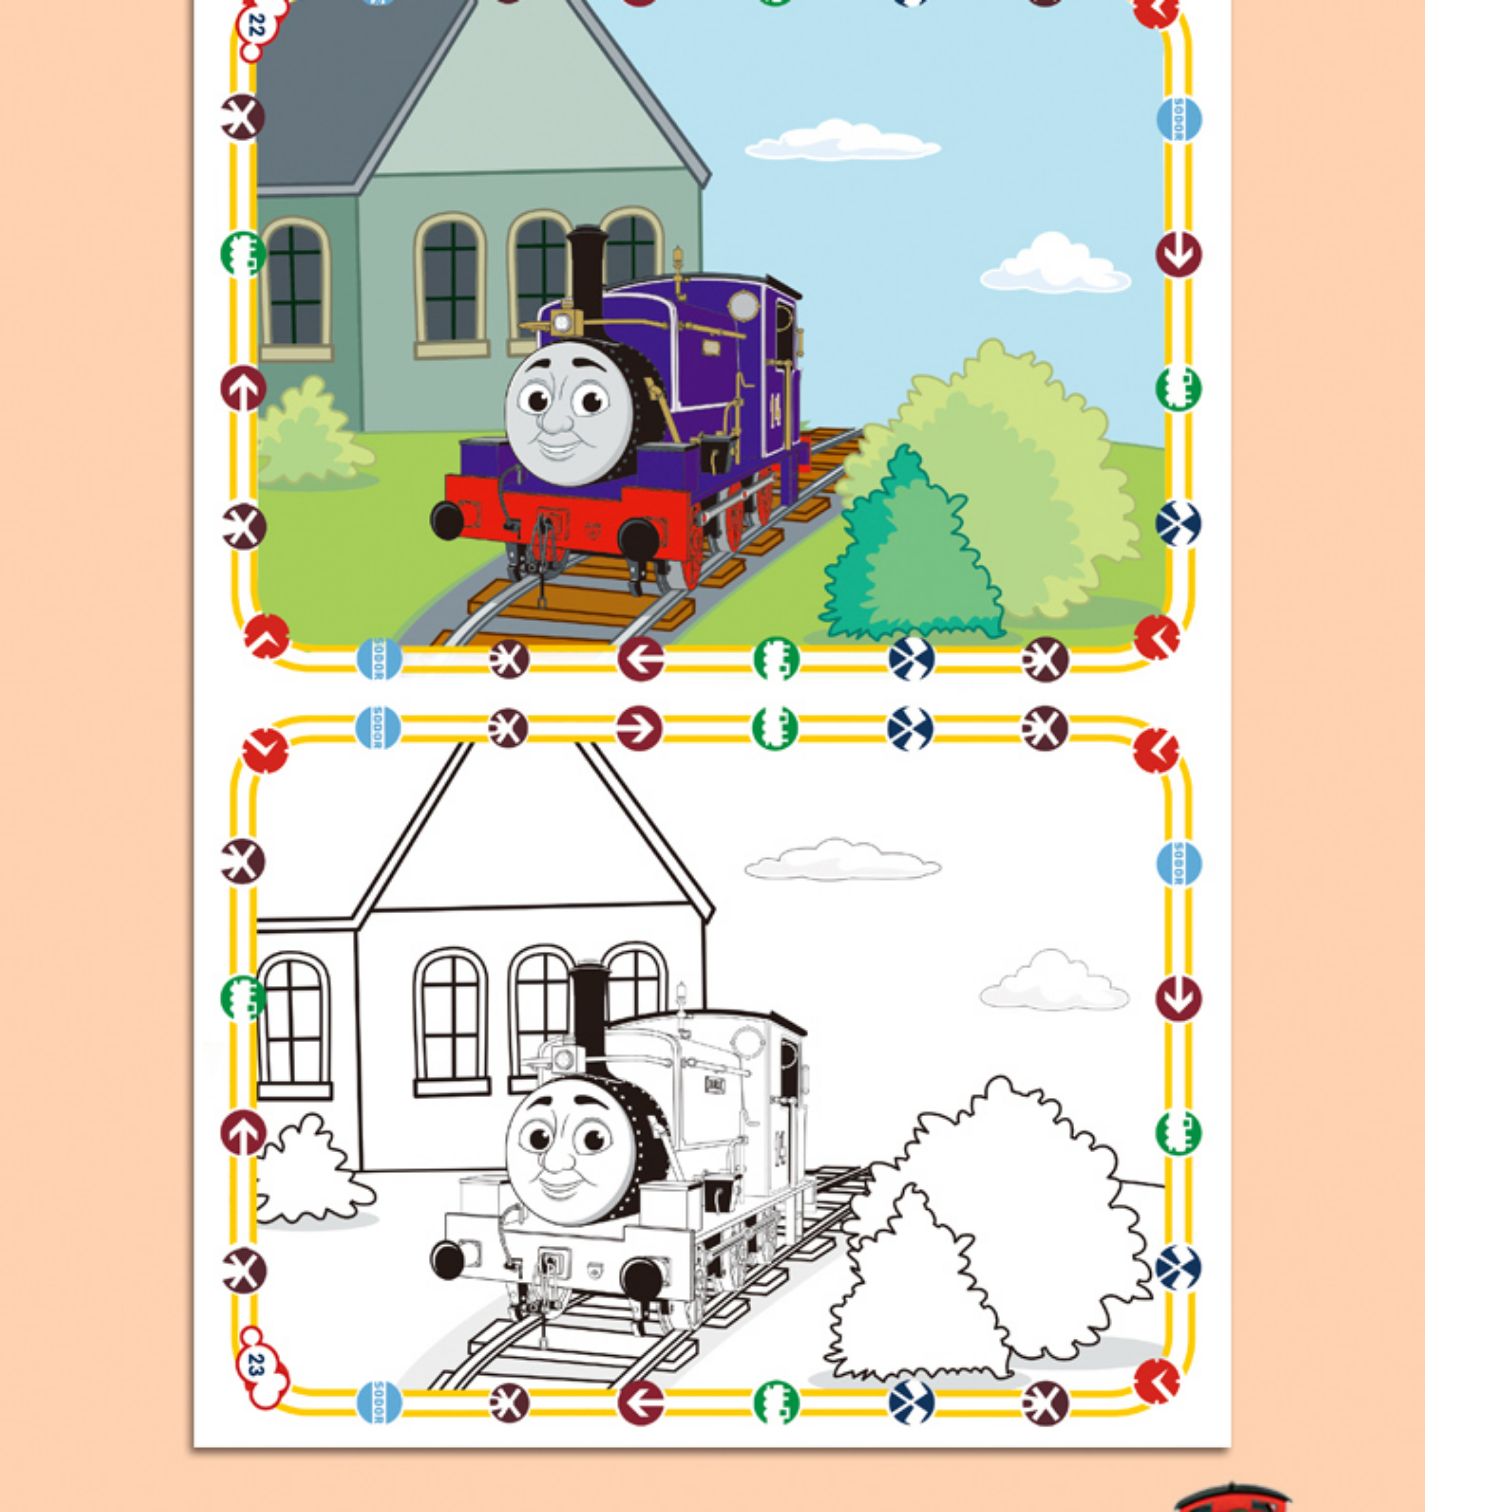 托马斯小火车和朋友超级涂色书全4册 2-3-4-5-6周岁儿童涂色本画画书